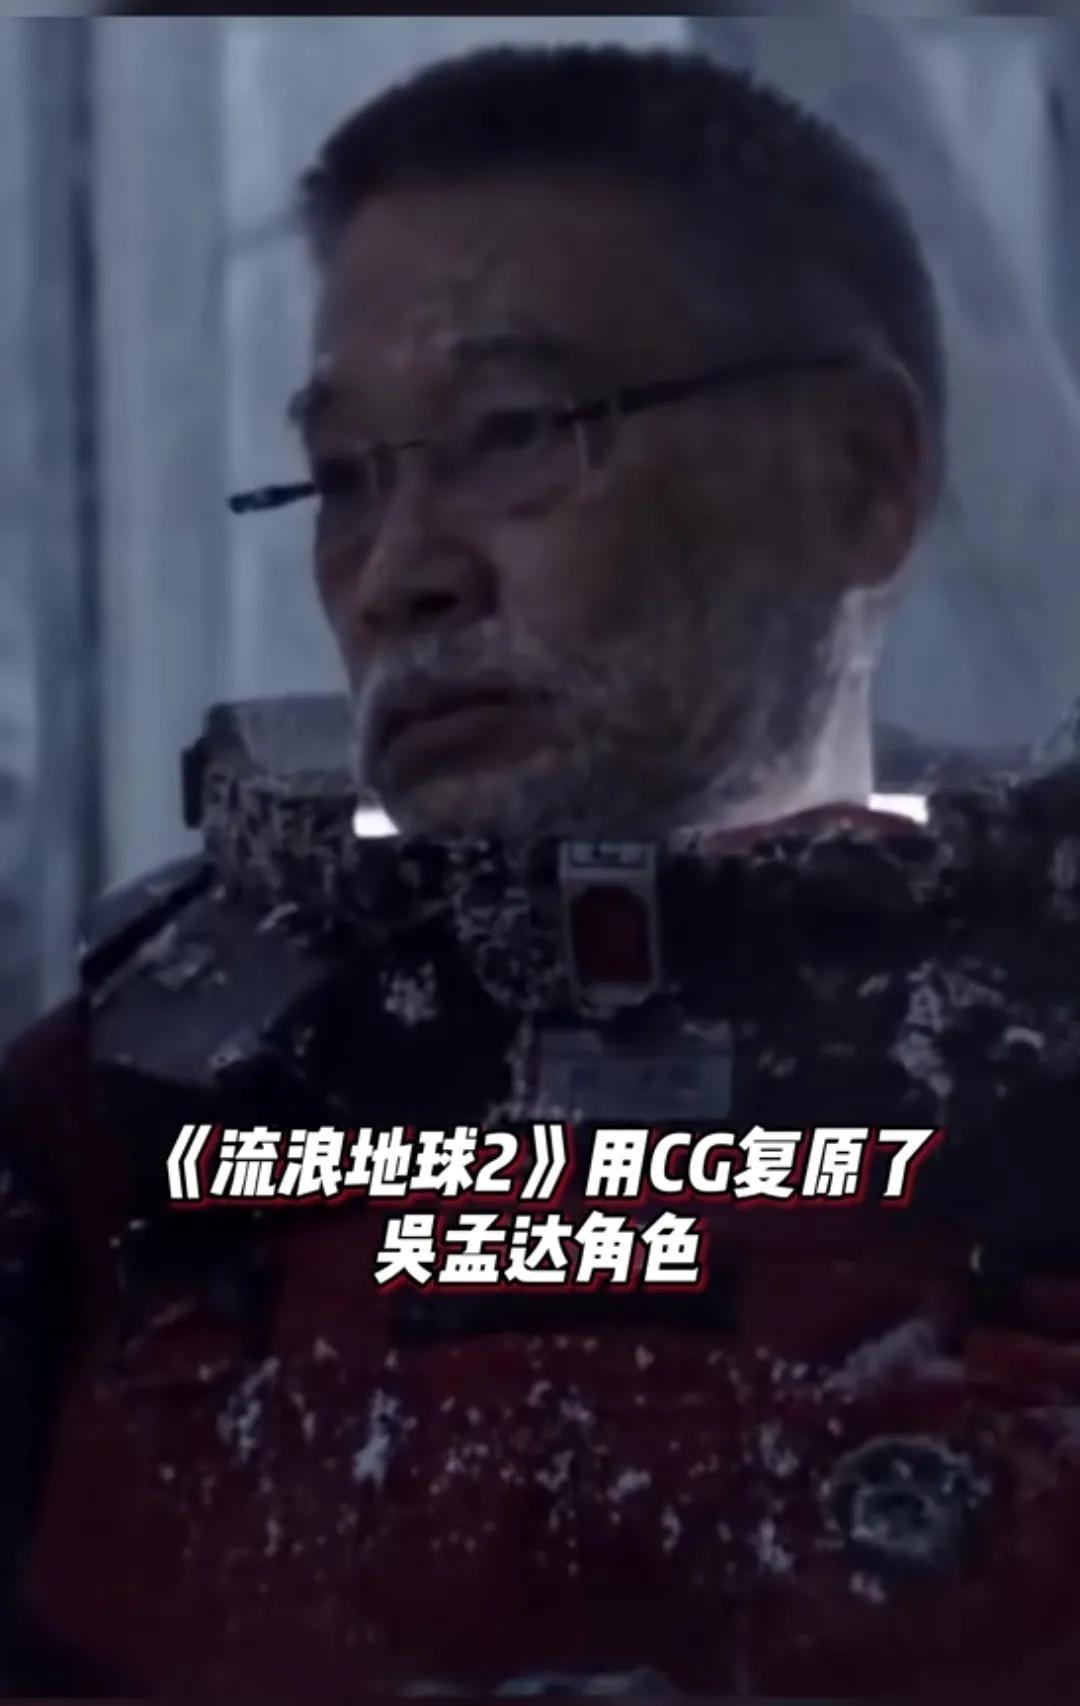 《流浪地球2》用CG复原吴孟达角色 导演以此方式缅怀纪念达叔